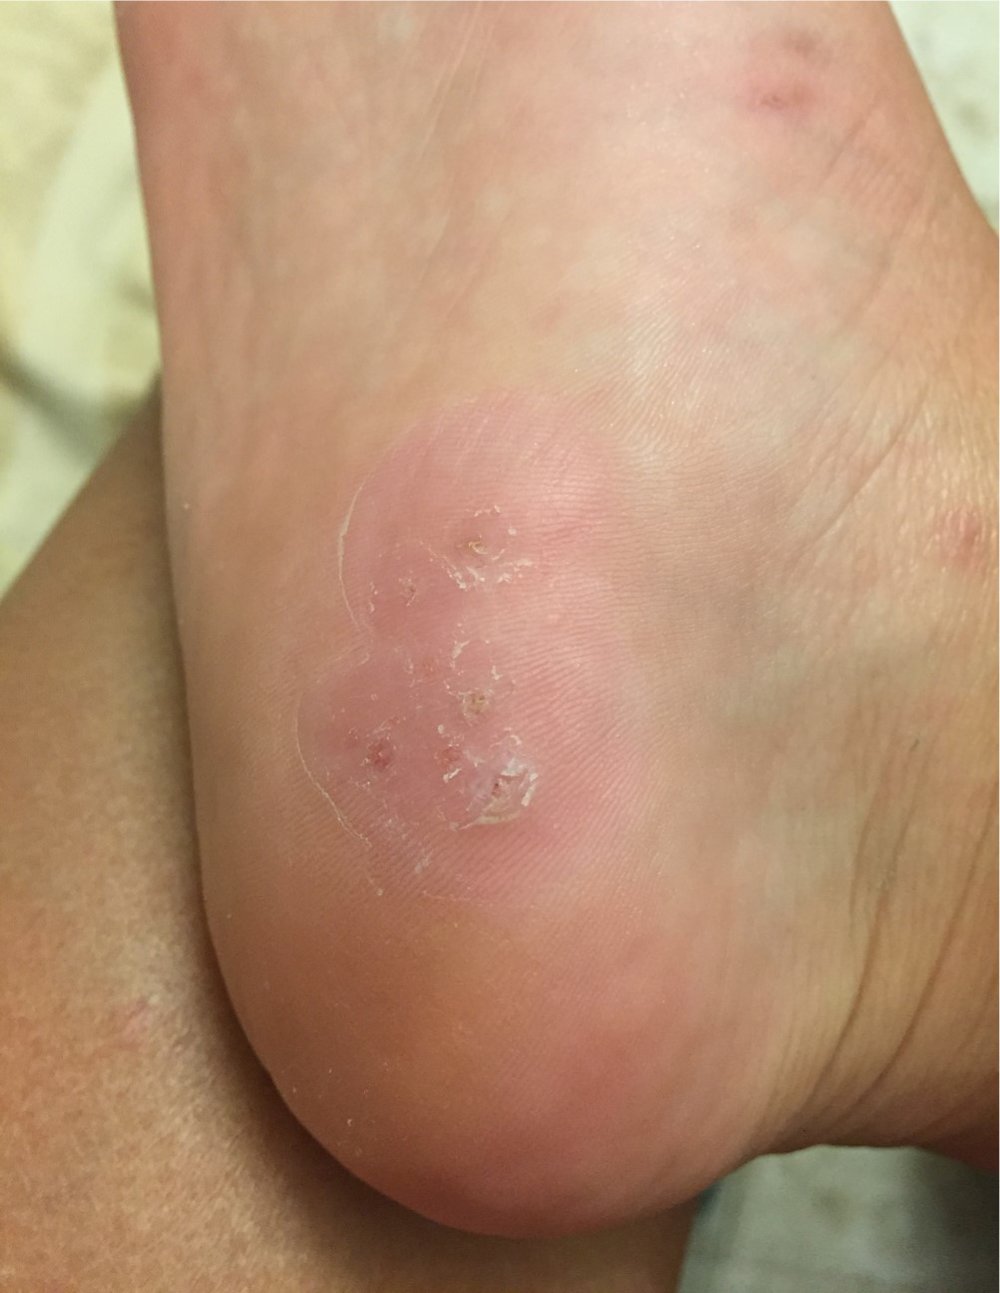 Wart foot sole